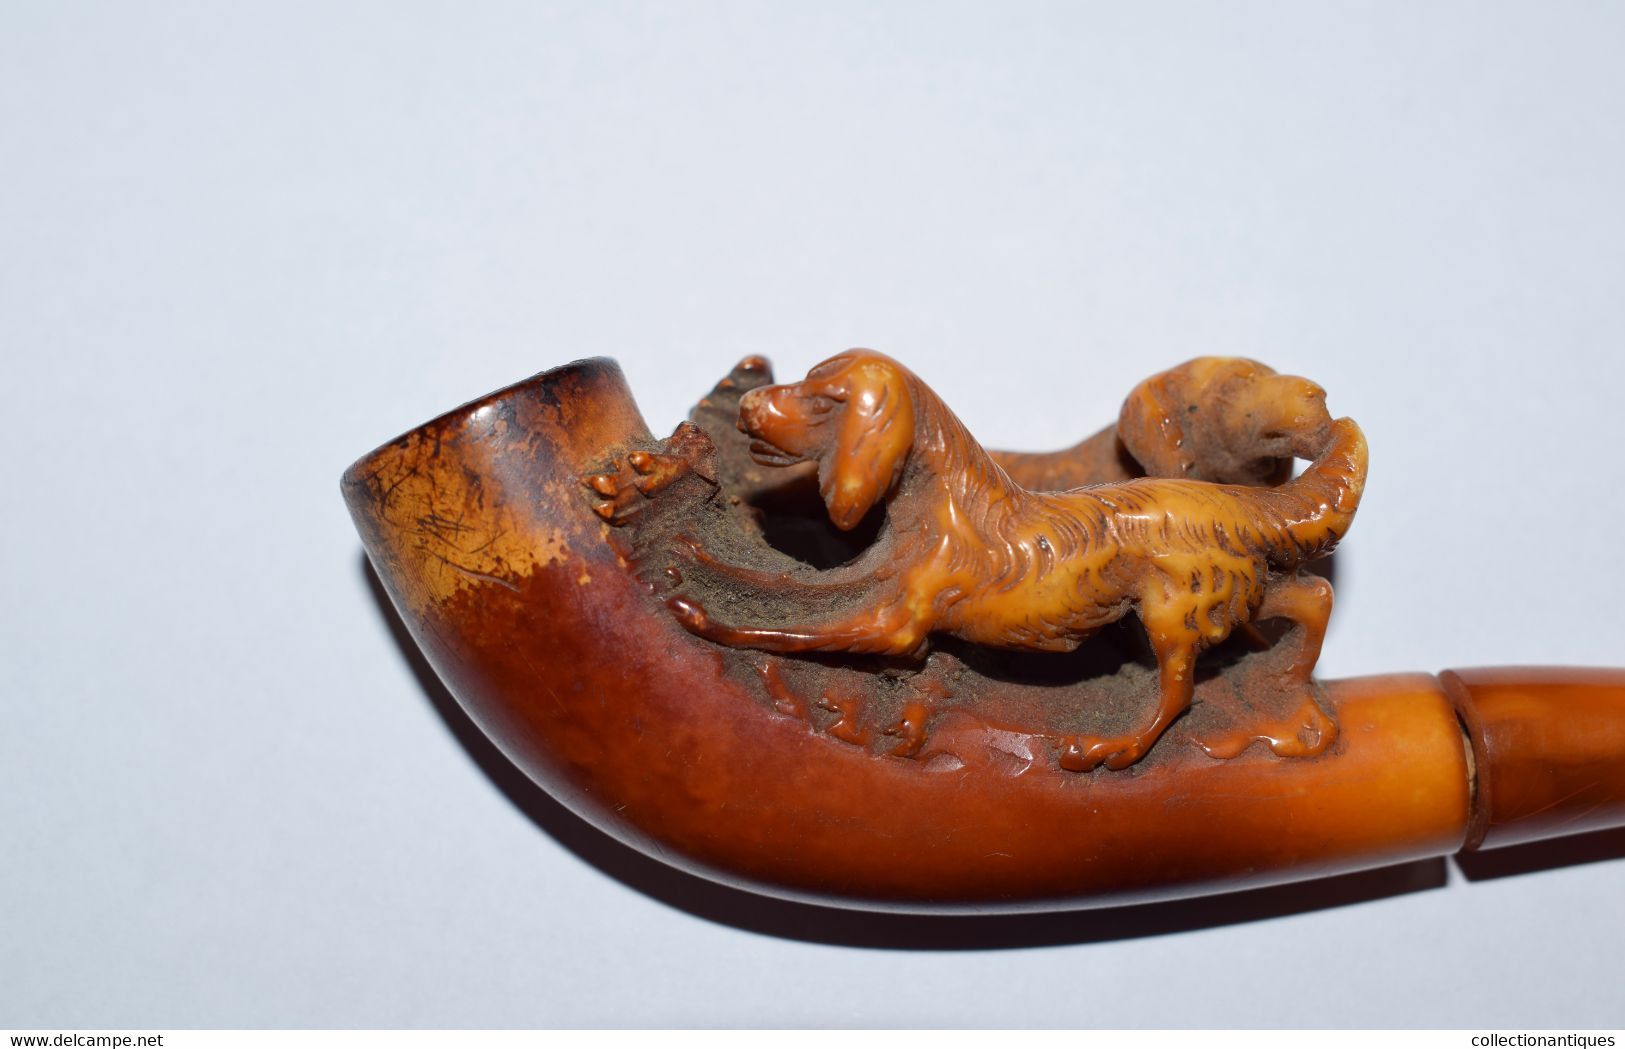 Ancienne Pipe En écume De Mer Patinée Sculptée (Meerschaum) Et Ambre Représentant Une Scène De Chiens XIXème - Pipes En écume